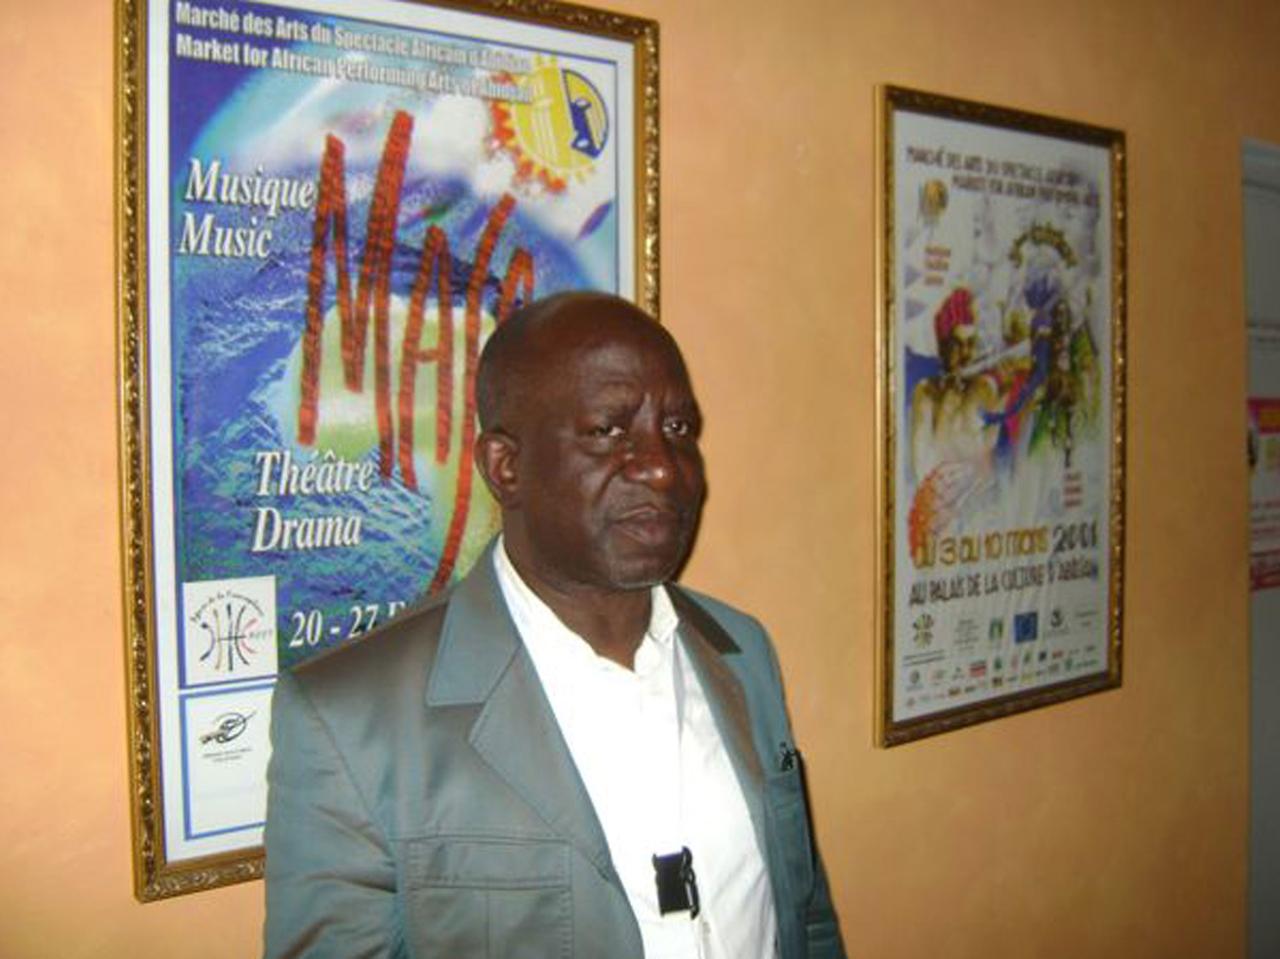 Kone Dodo ist der Direktor des Kulturpalastes, wo die meisten Shows des "marché des arts du spectacle africain" stattfinden.